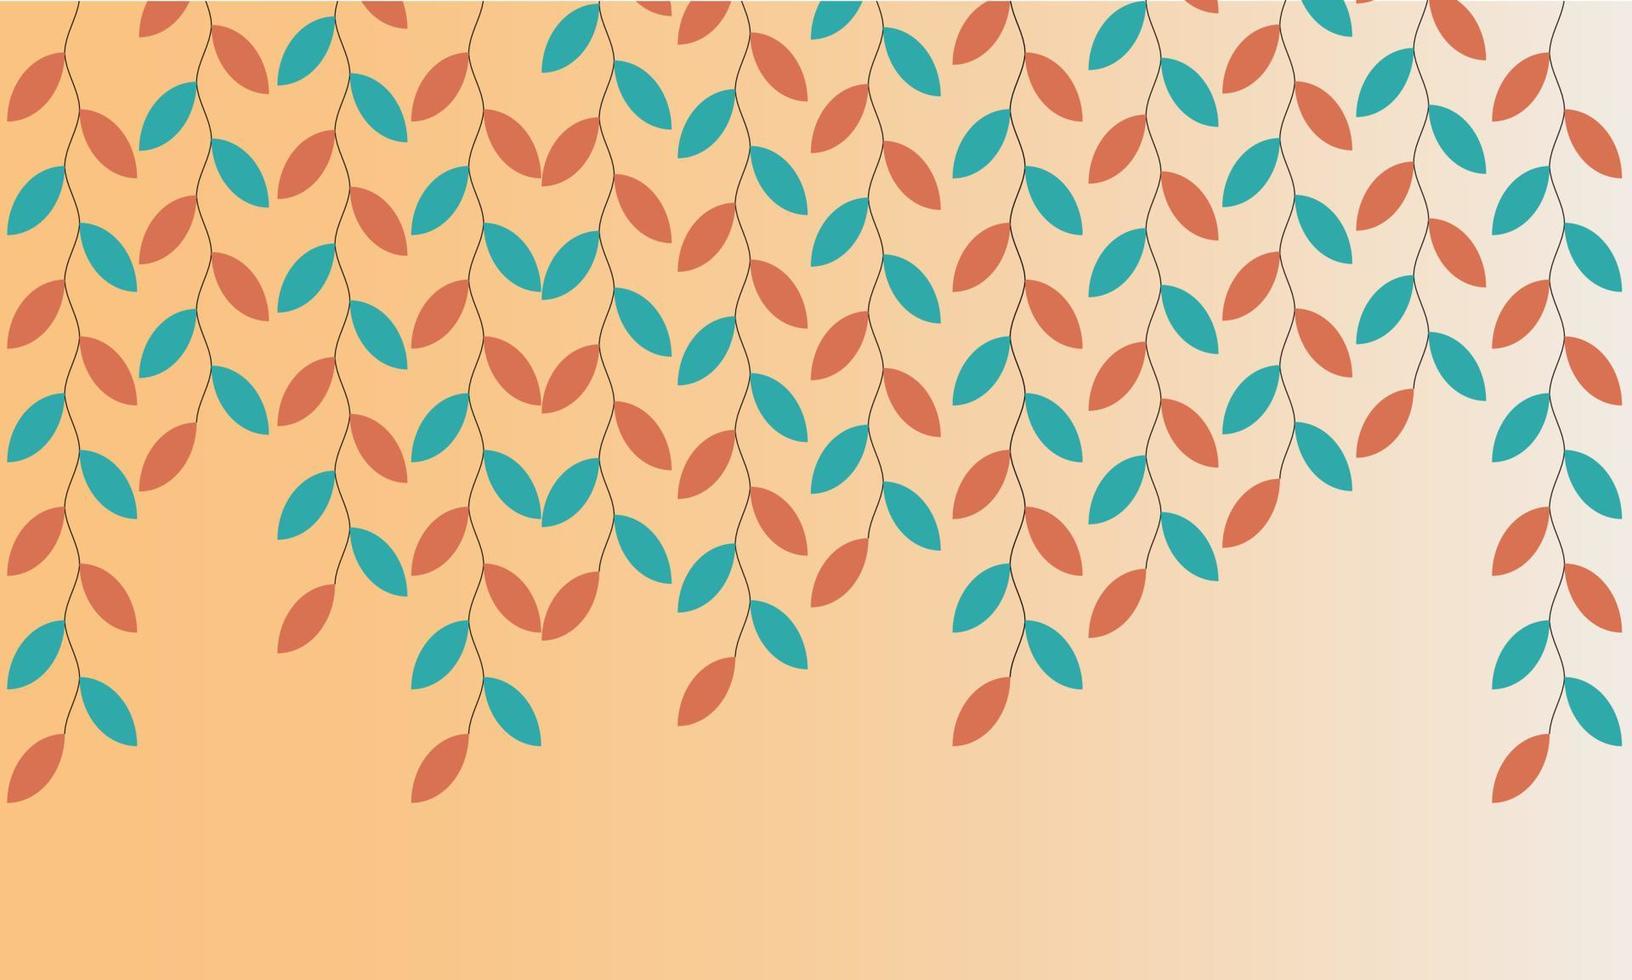 patroon perzik en blauwe bladeren op perzik achtergrond. vector illustratie